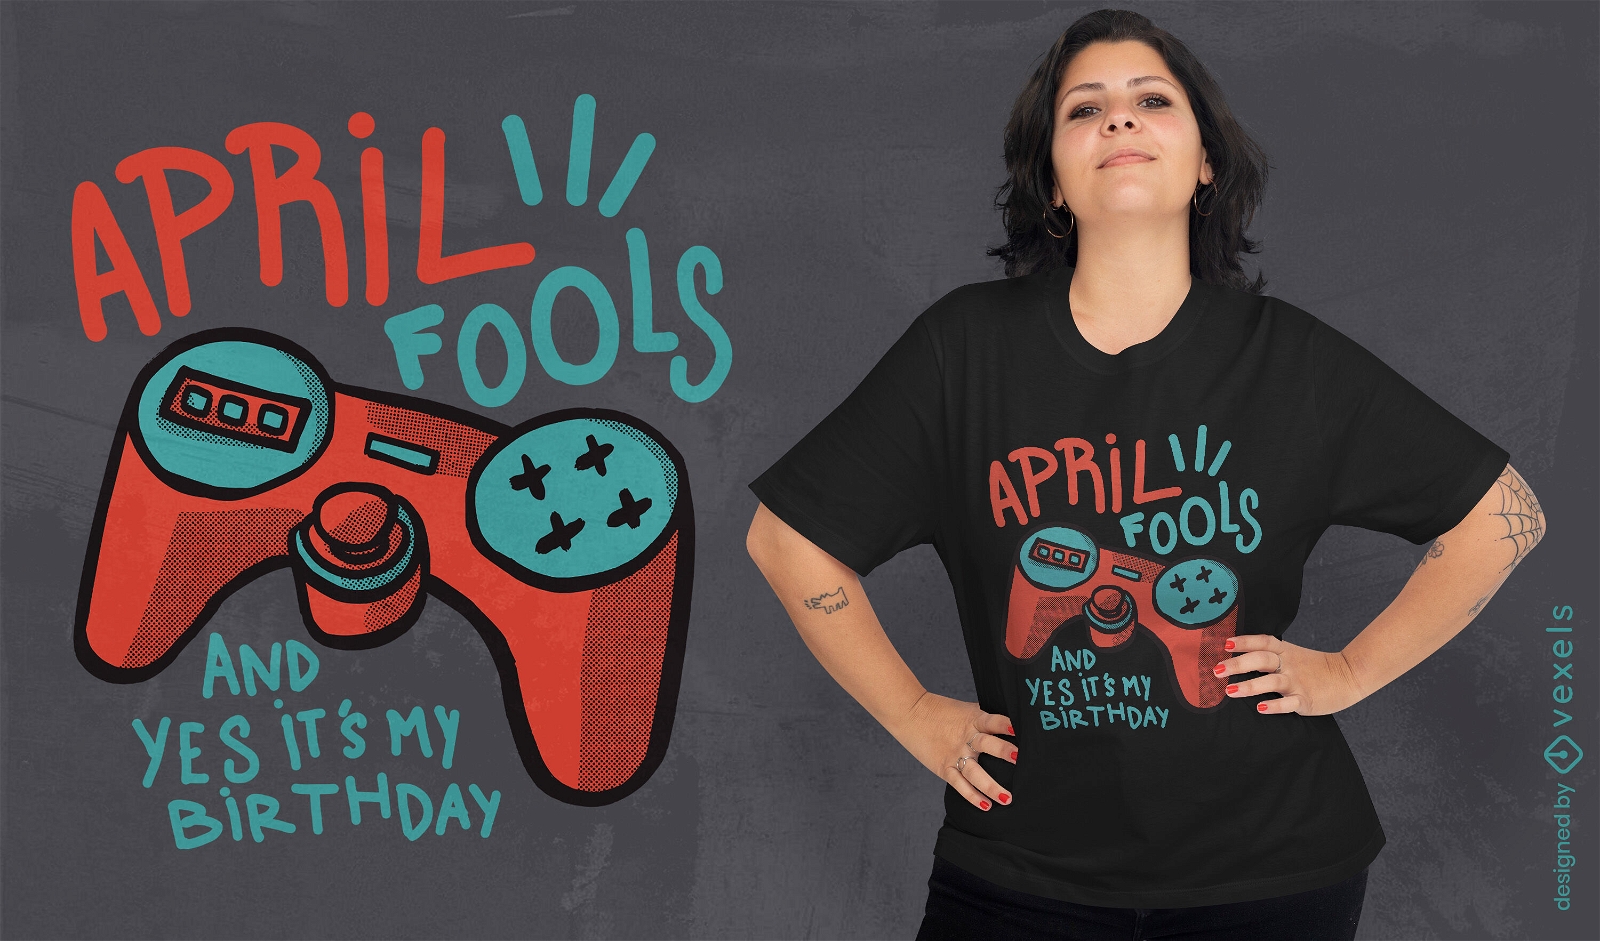 April fools quote t-shirt design